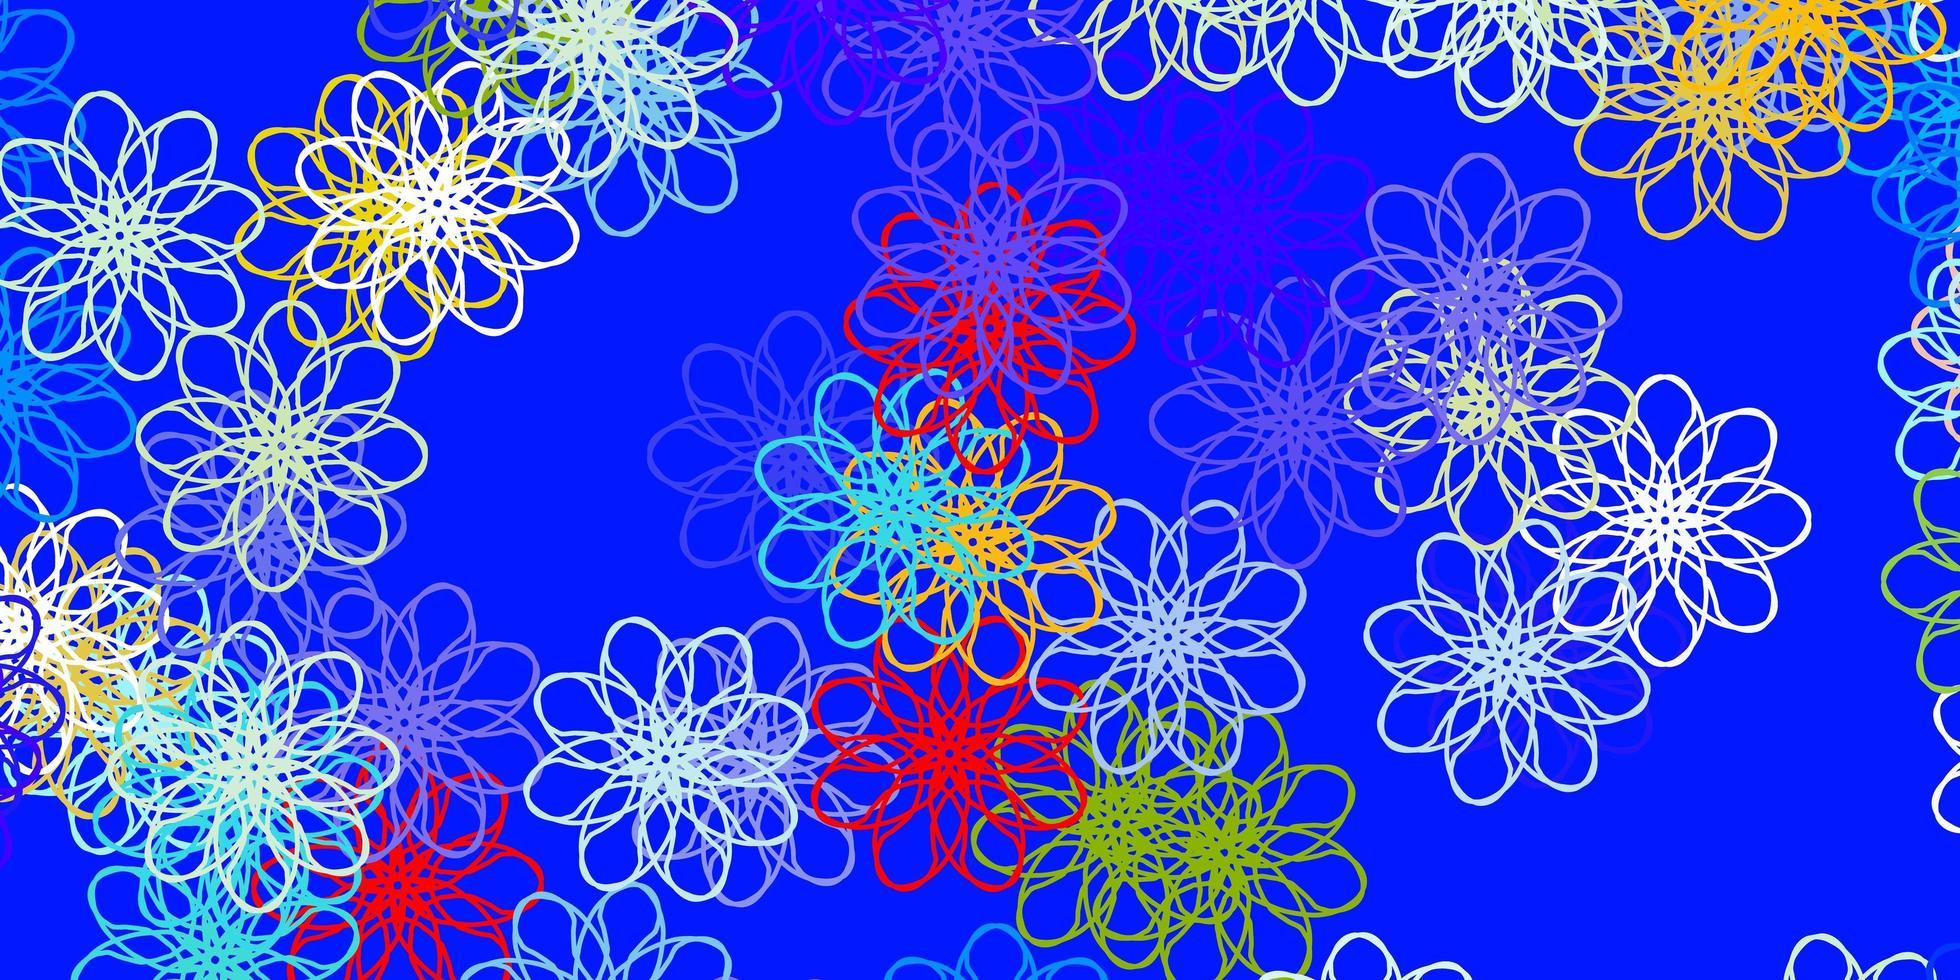 plantilla de doodle de vector multicolor claro con flores.